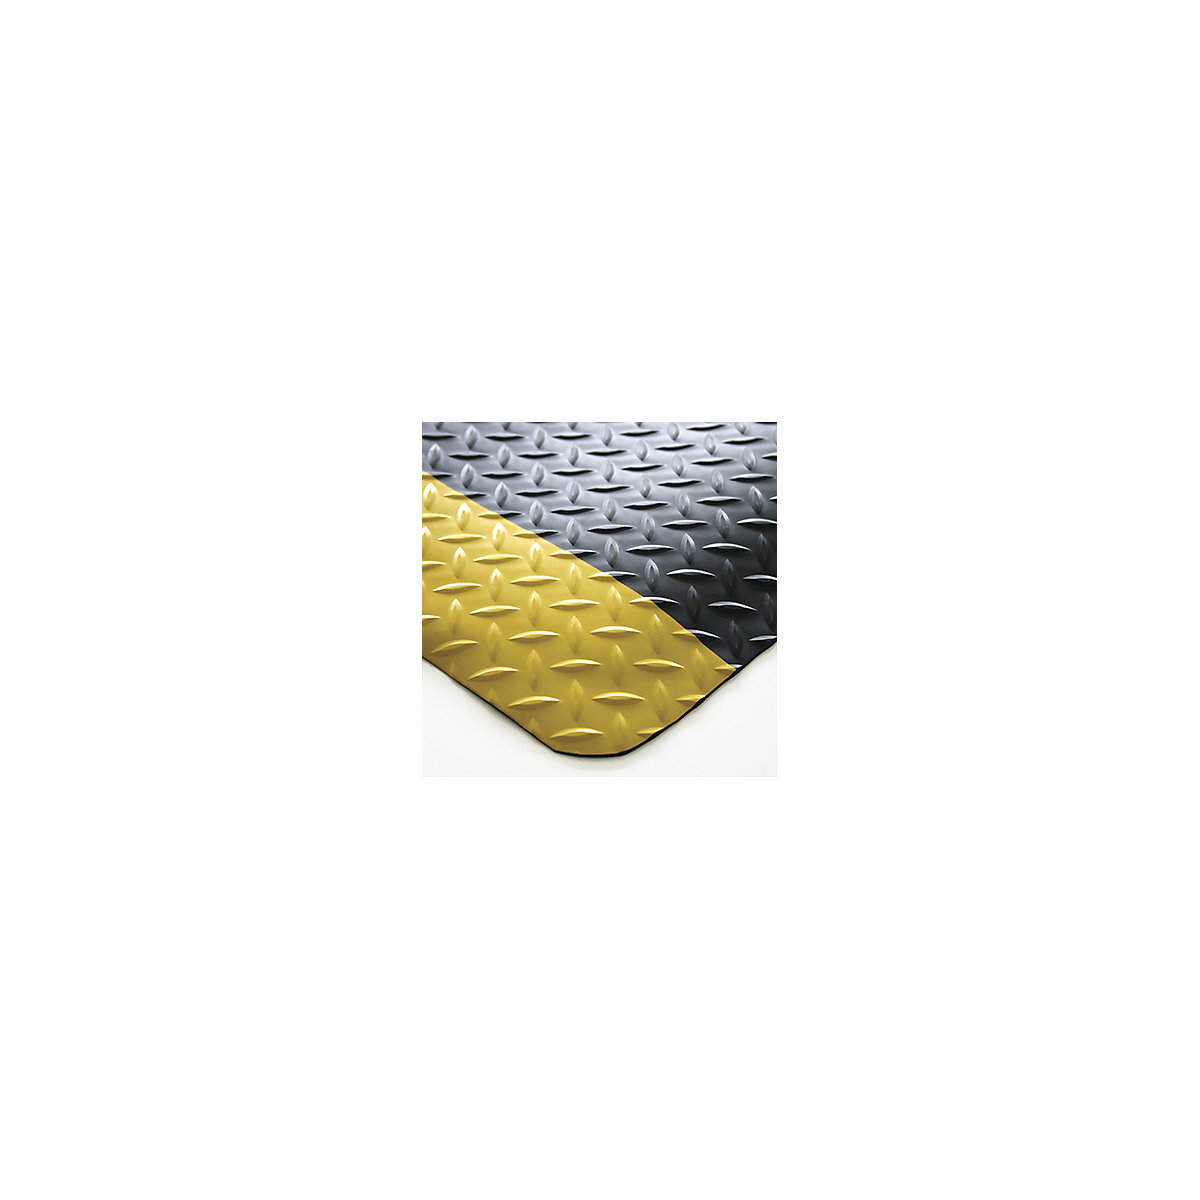 Esteira anticansaço DECKPLATE, dimensões fixas, preto/amarelo, 900 x 600 mm